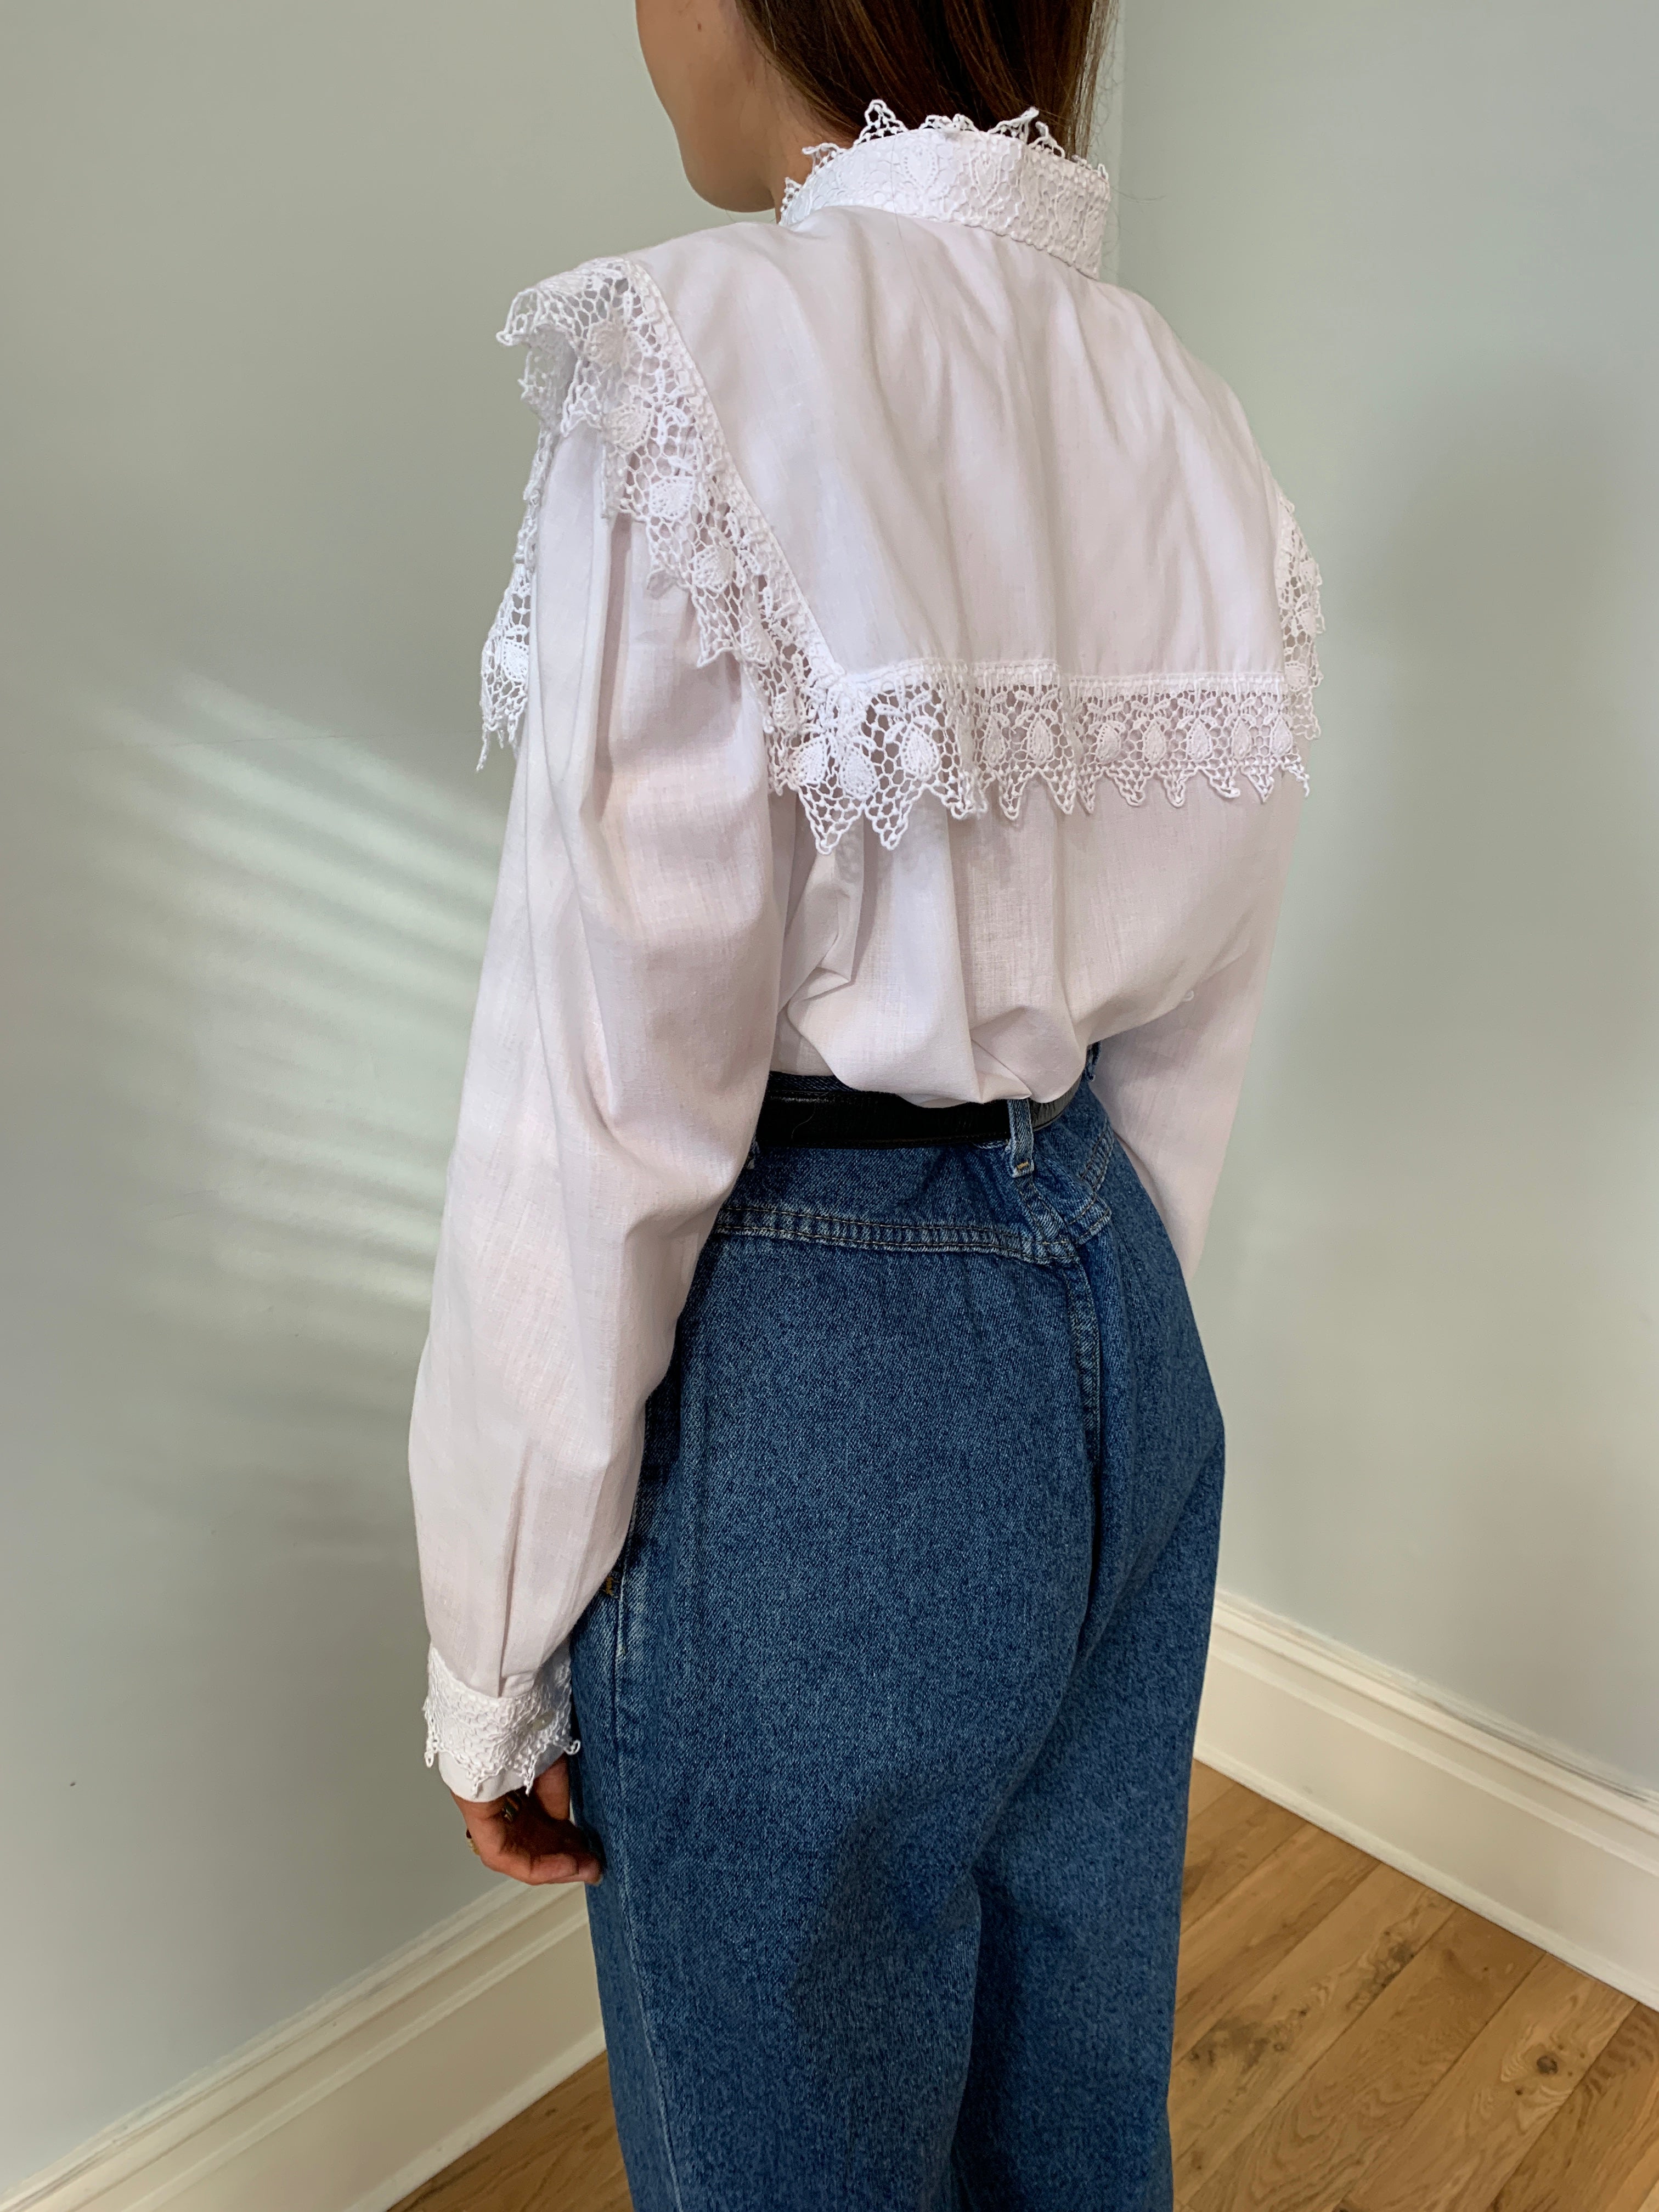 Linea Leonardo big collar cotton lace blouse